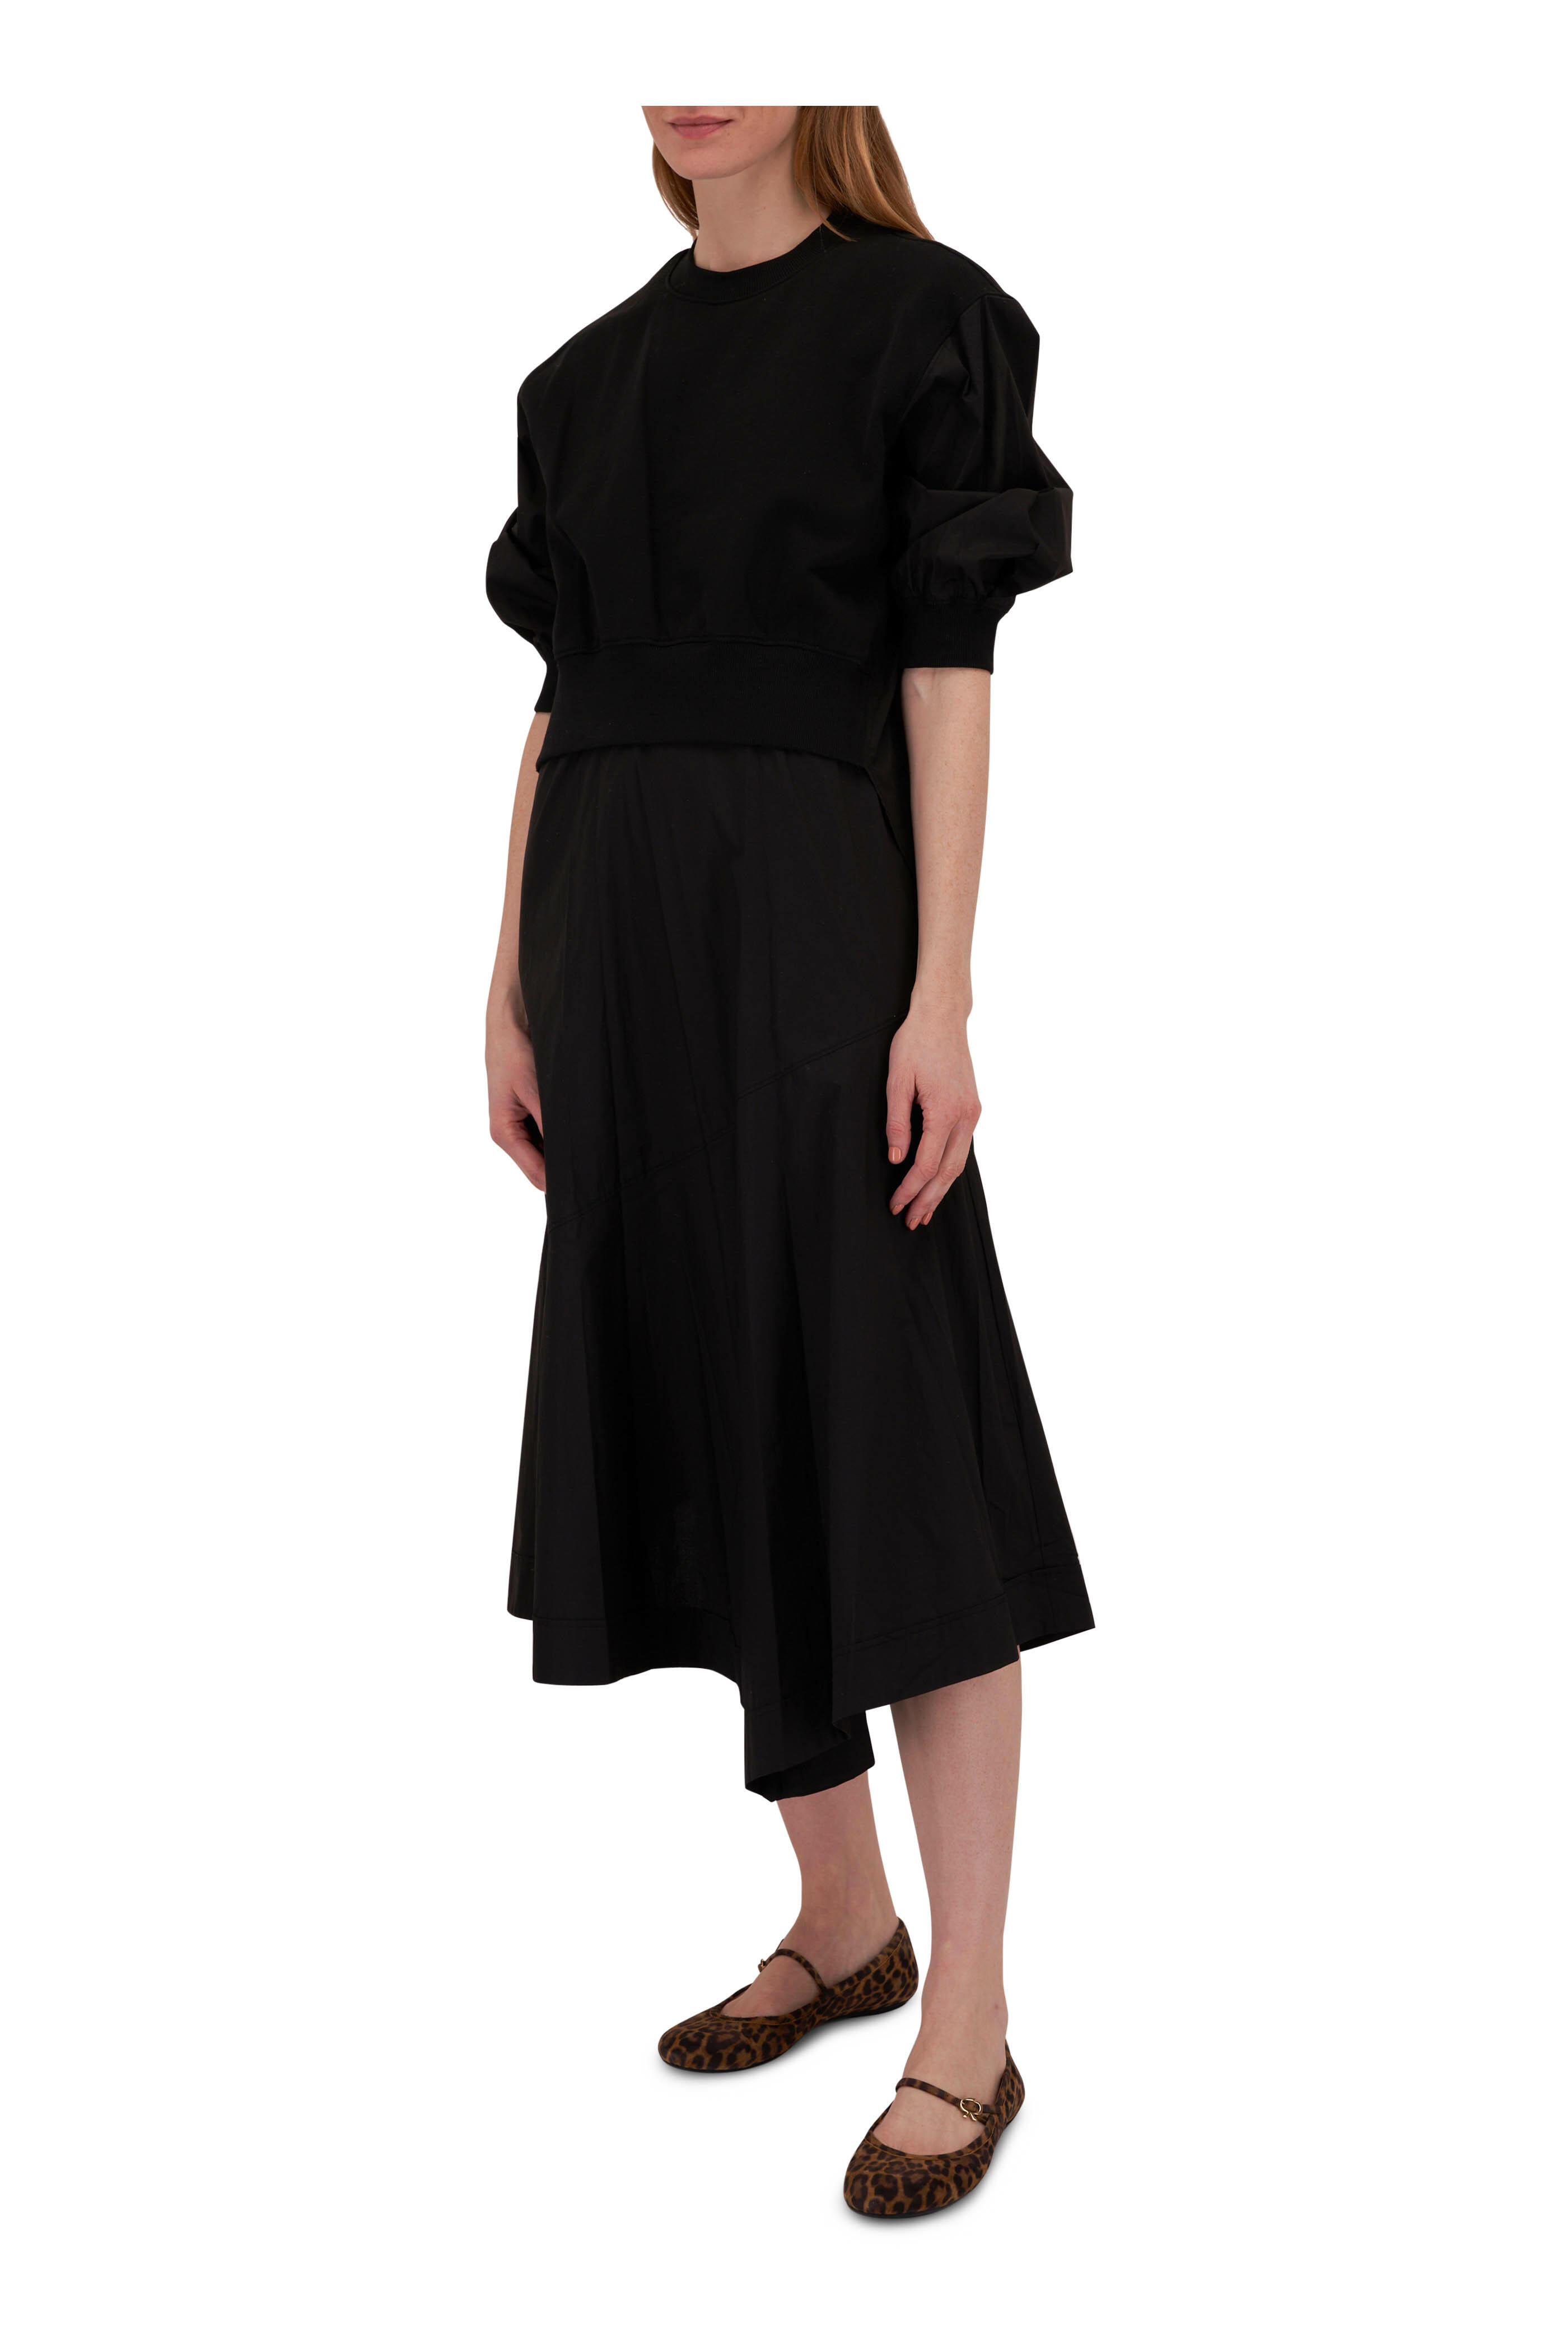 3.1 Phillip Lim stripe-print draped T-shirt dress - Black